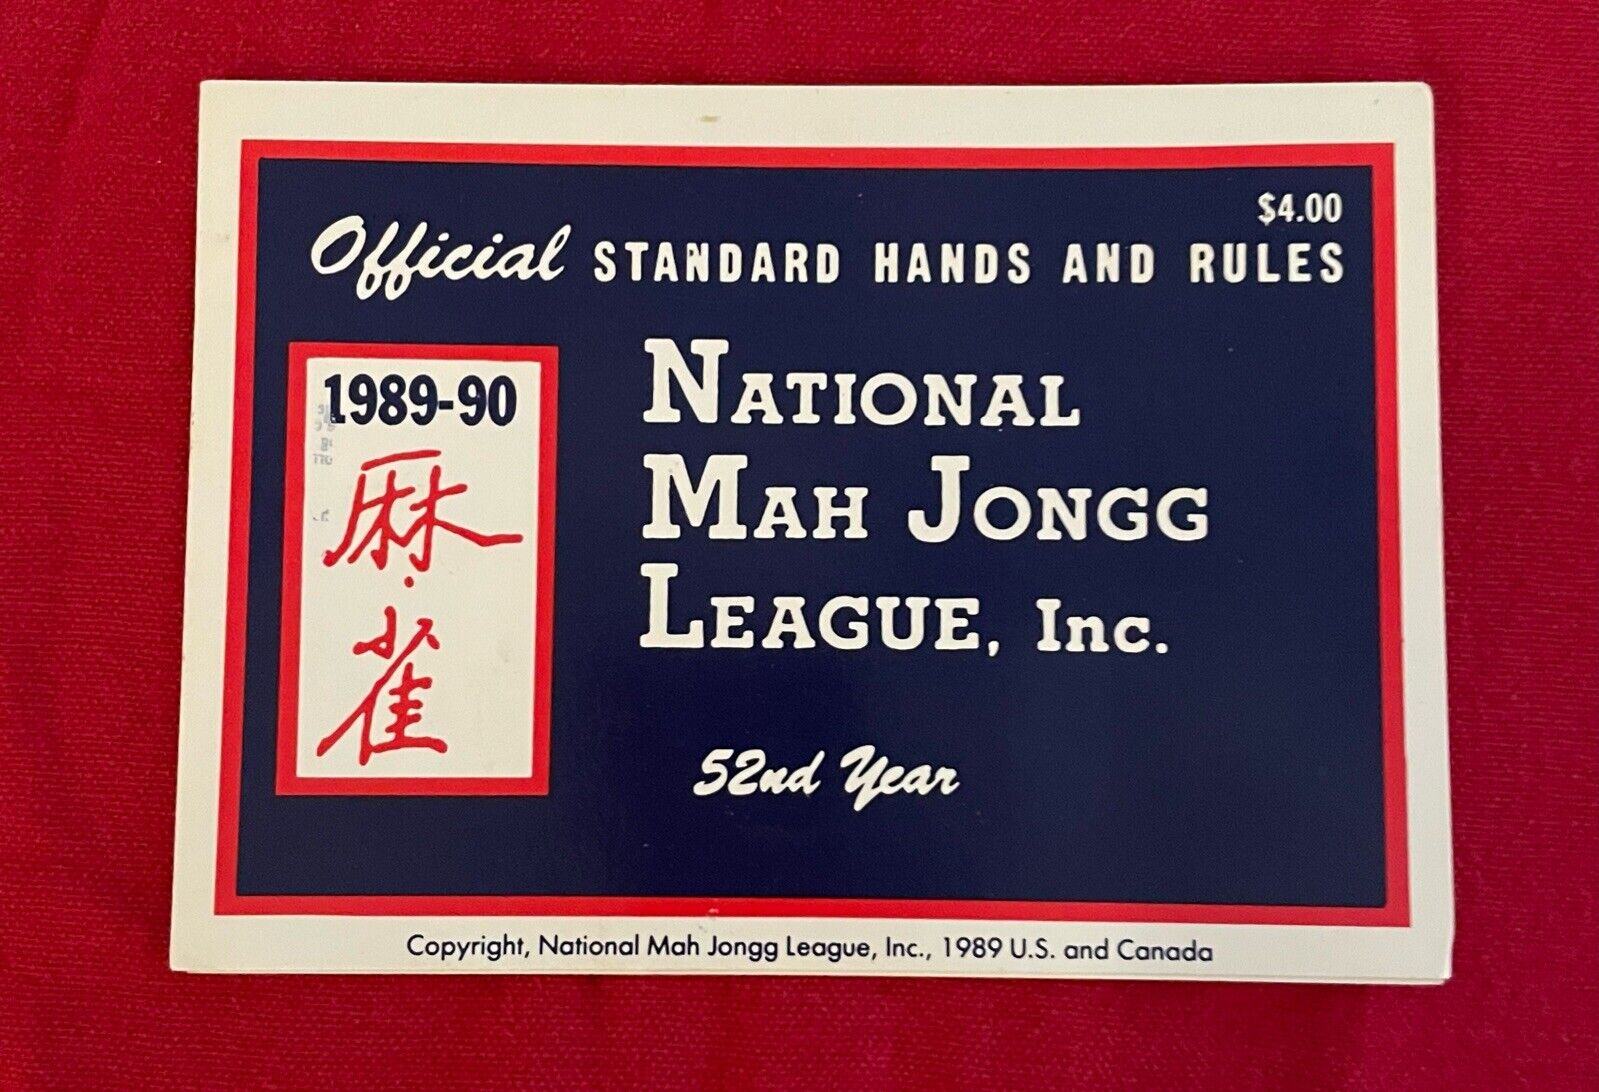 1989-90 National Mah Jongg League Card/Rule Large Print (